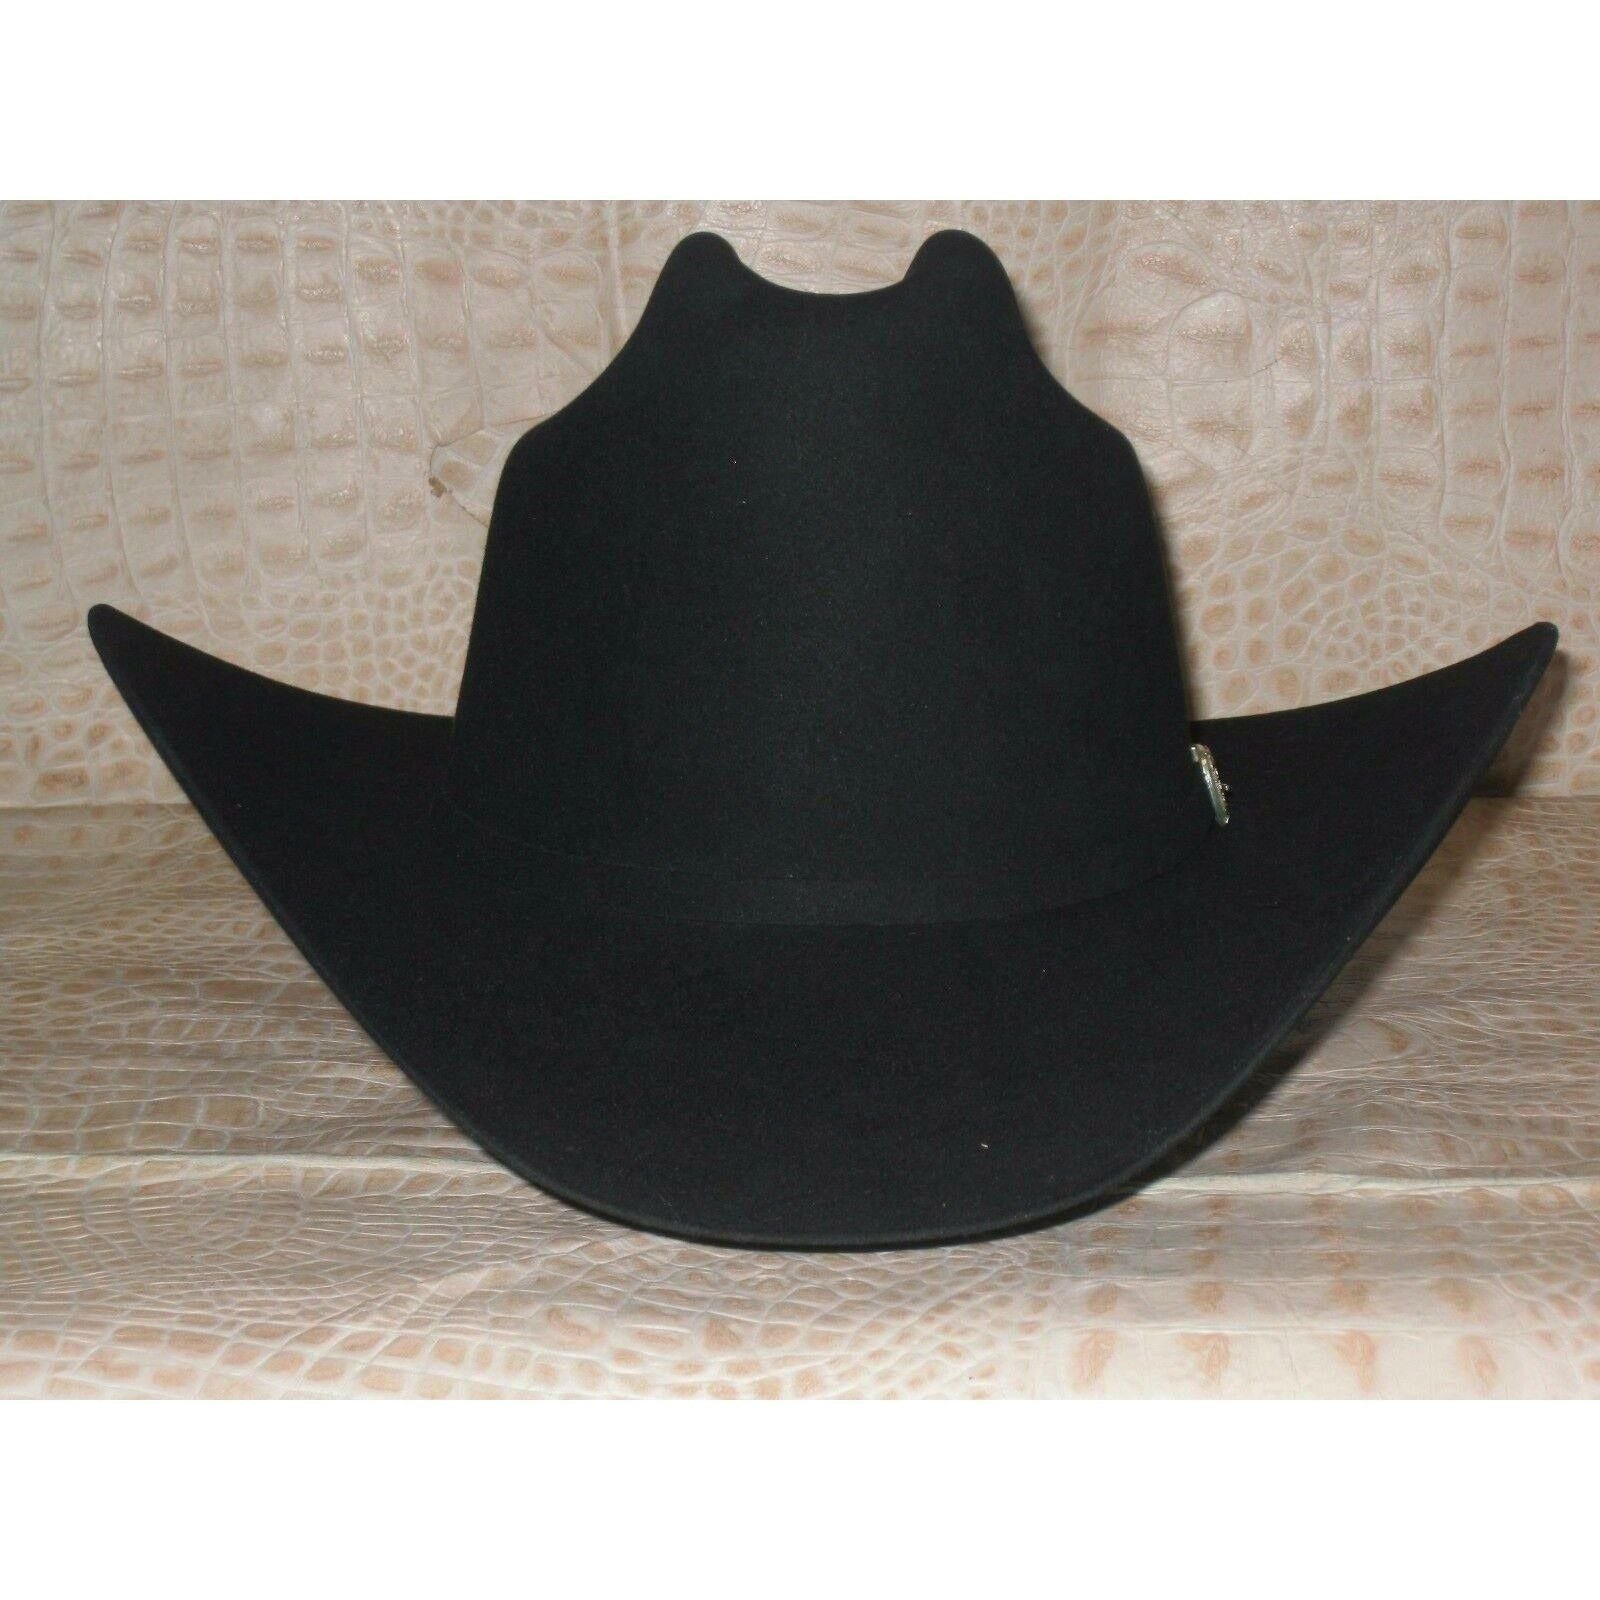 30X Stetson El Patron Black Beaver Fur Felt Western Cowboy Rodeo Hat - CWesternwear